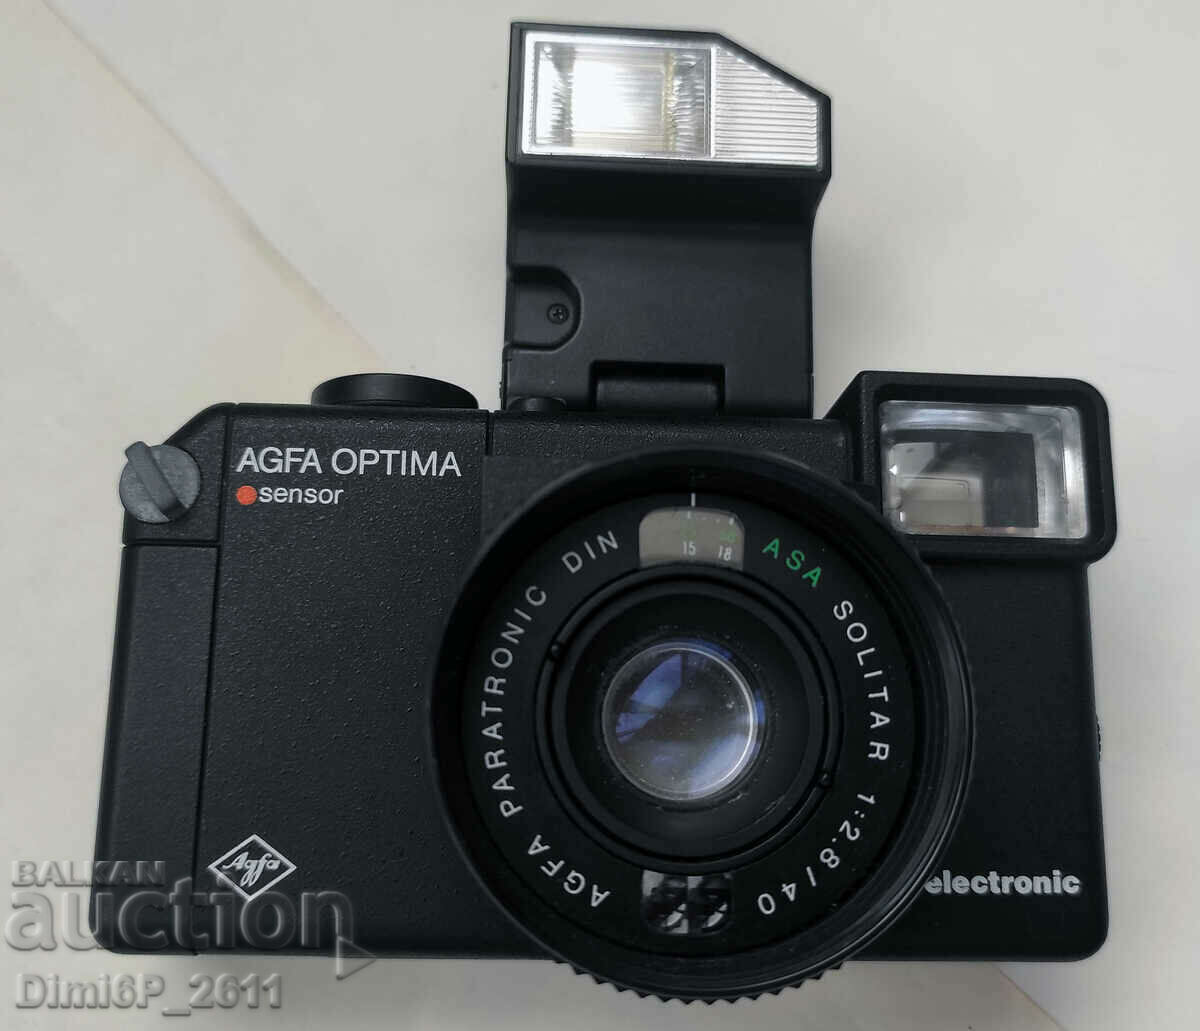 Ηλεκτρονική κάμερα Agfa Optima